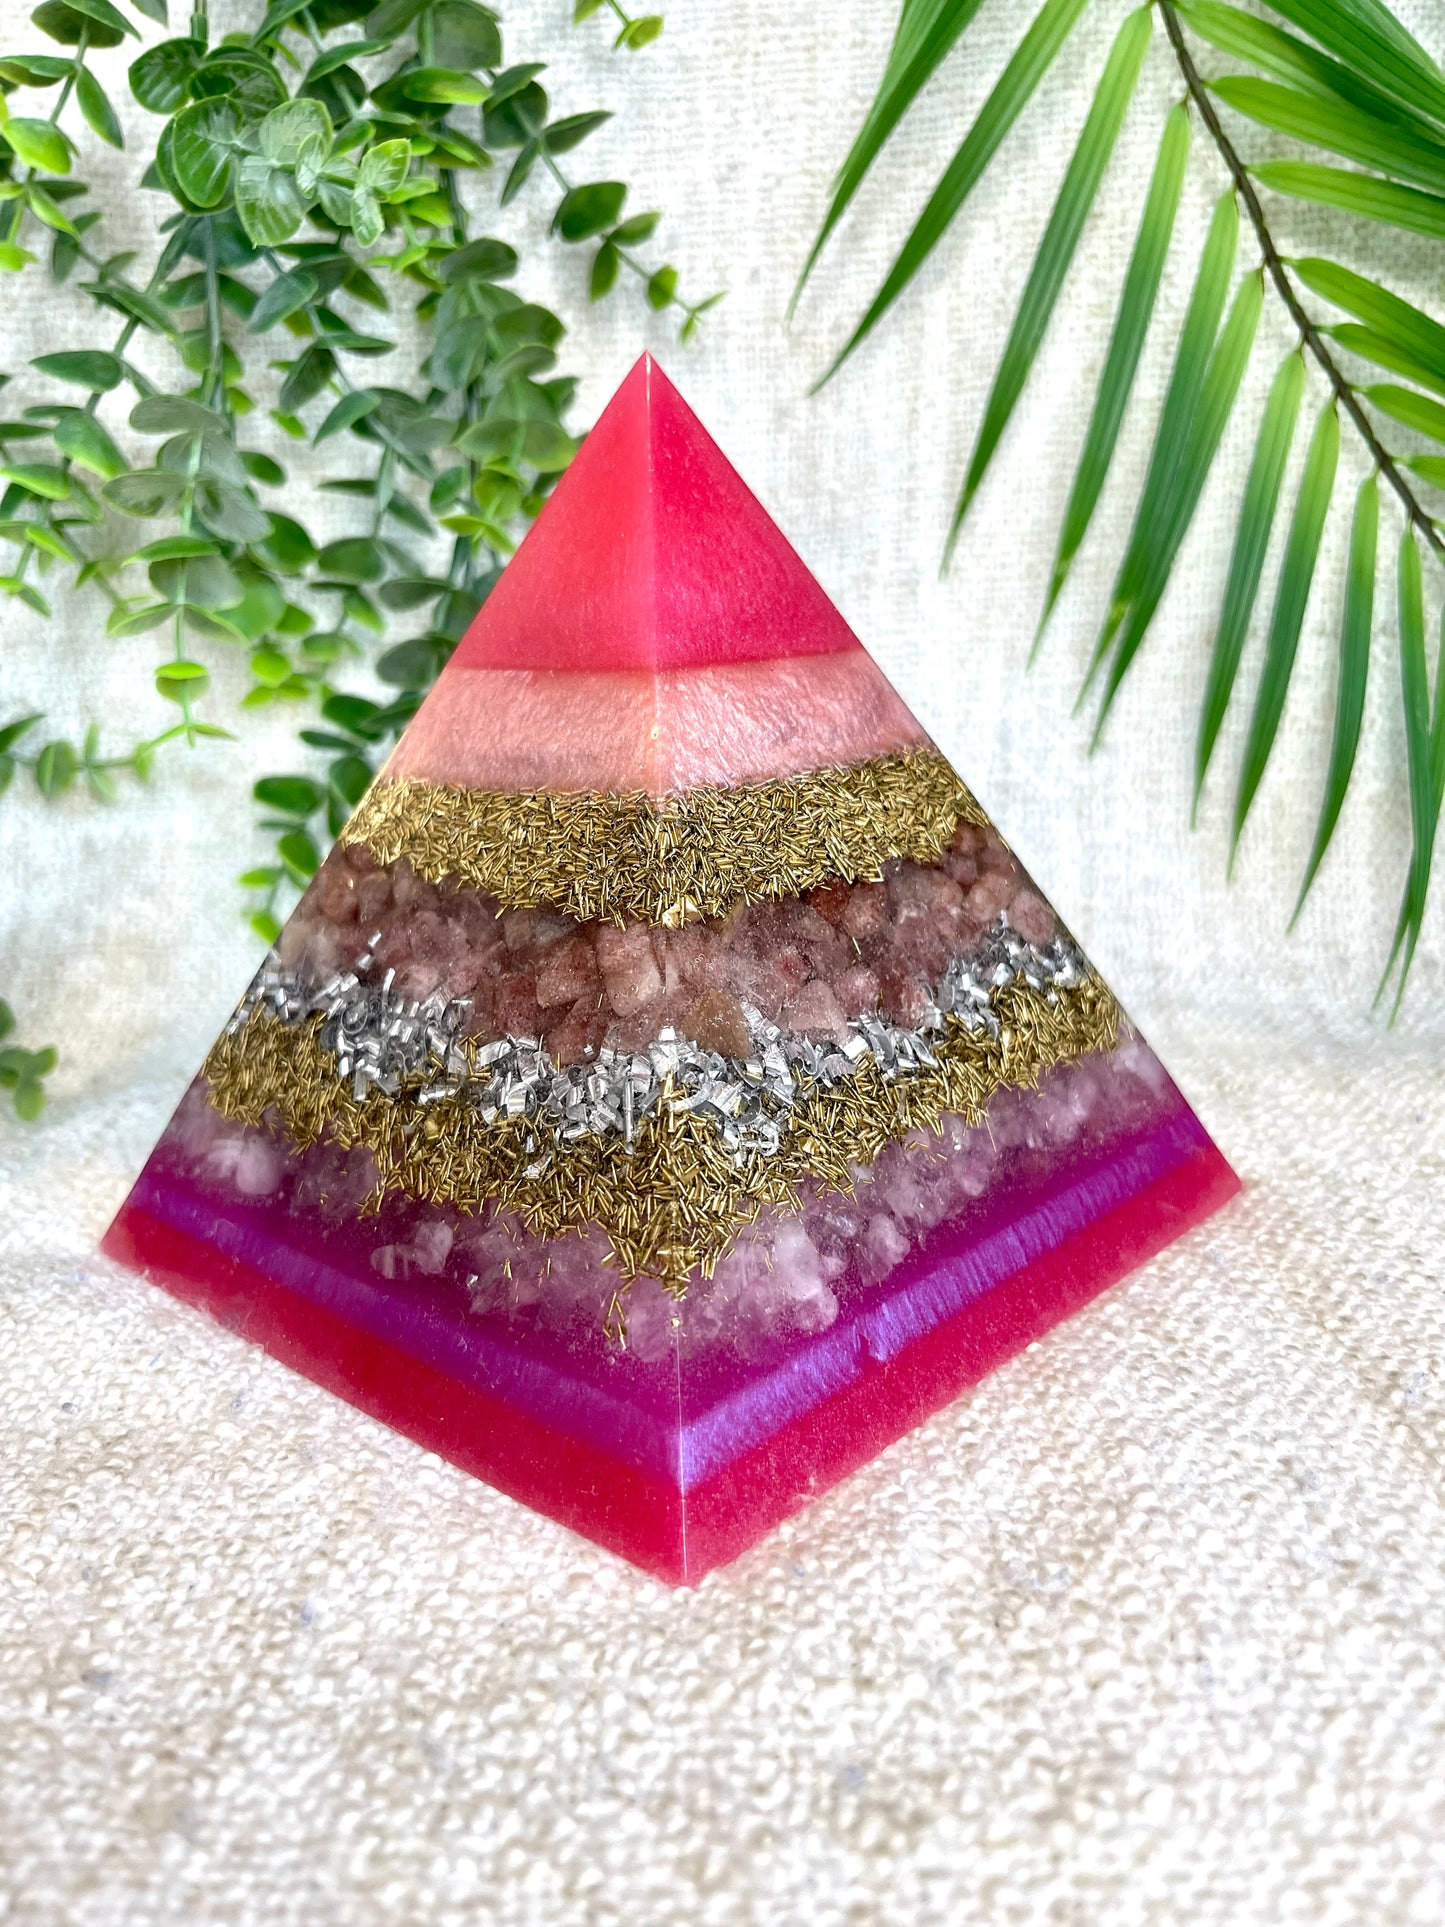 SABRINA - Orgonite Pyramid - EMF Protector - Strawberry Quartz and Rose Quartz with Brass and Aluminum Metal